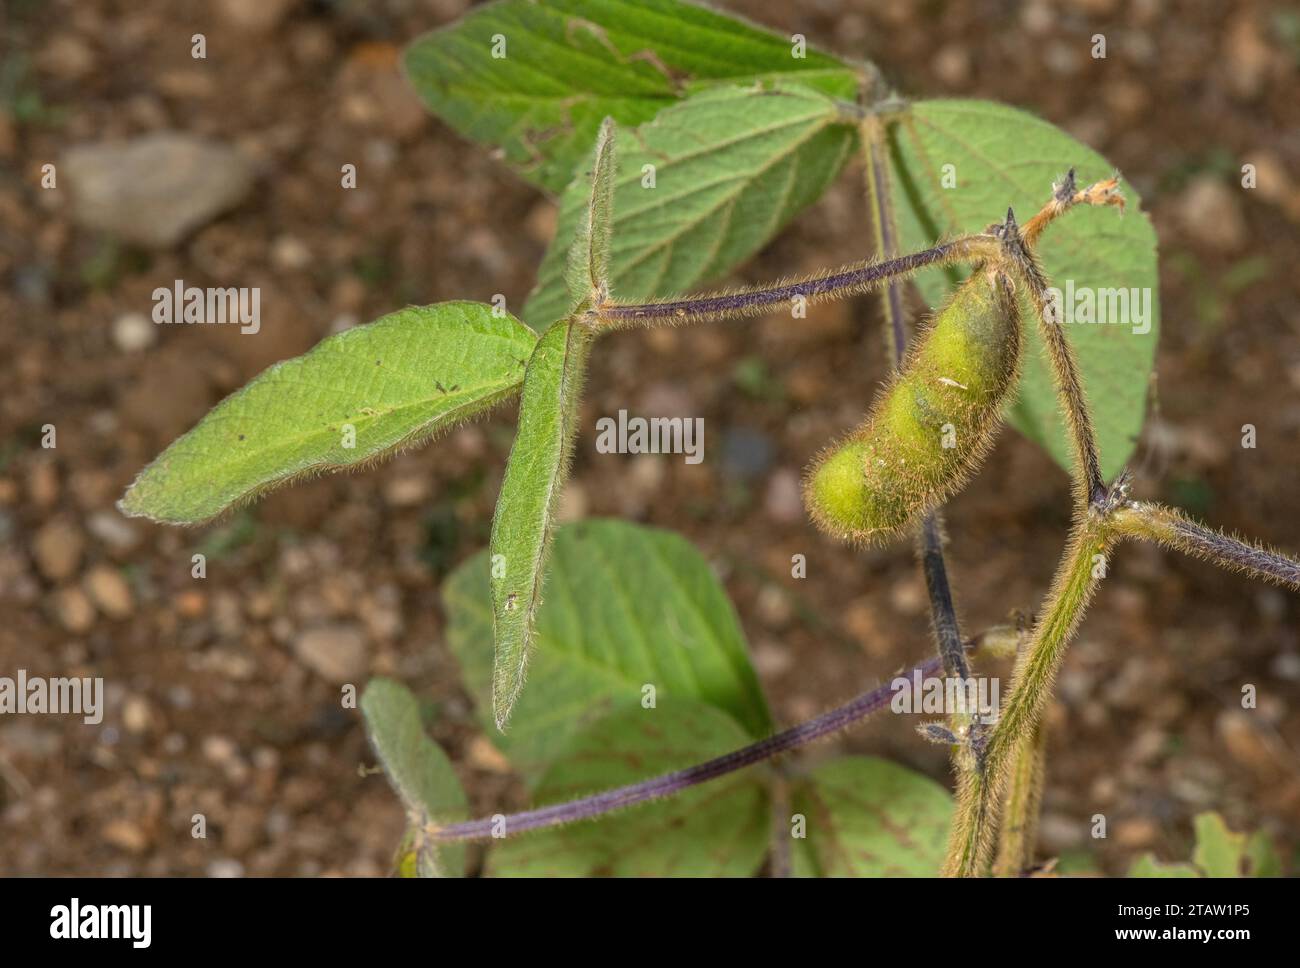 Sojabohnen, Glycin max, in Früchten. Weit verbreitet als eiweißreiche Pflanze. Stockfoto